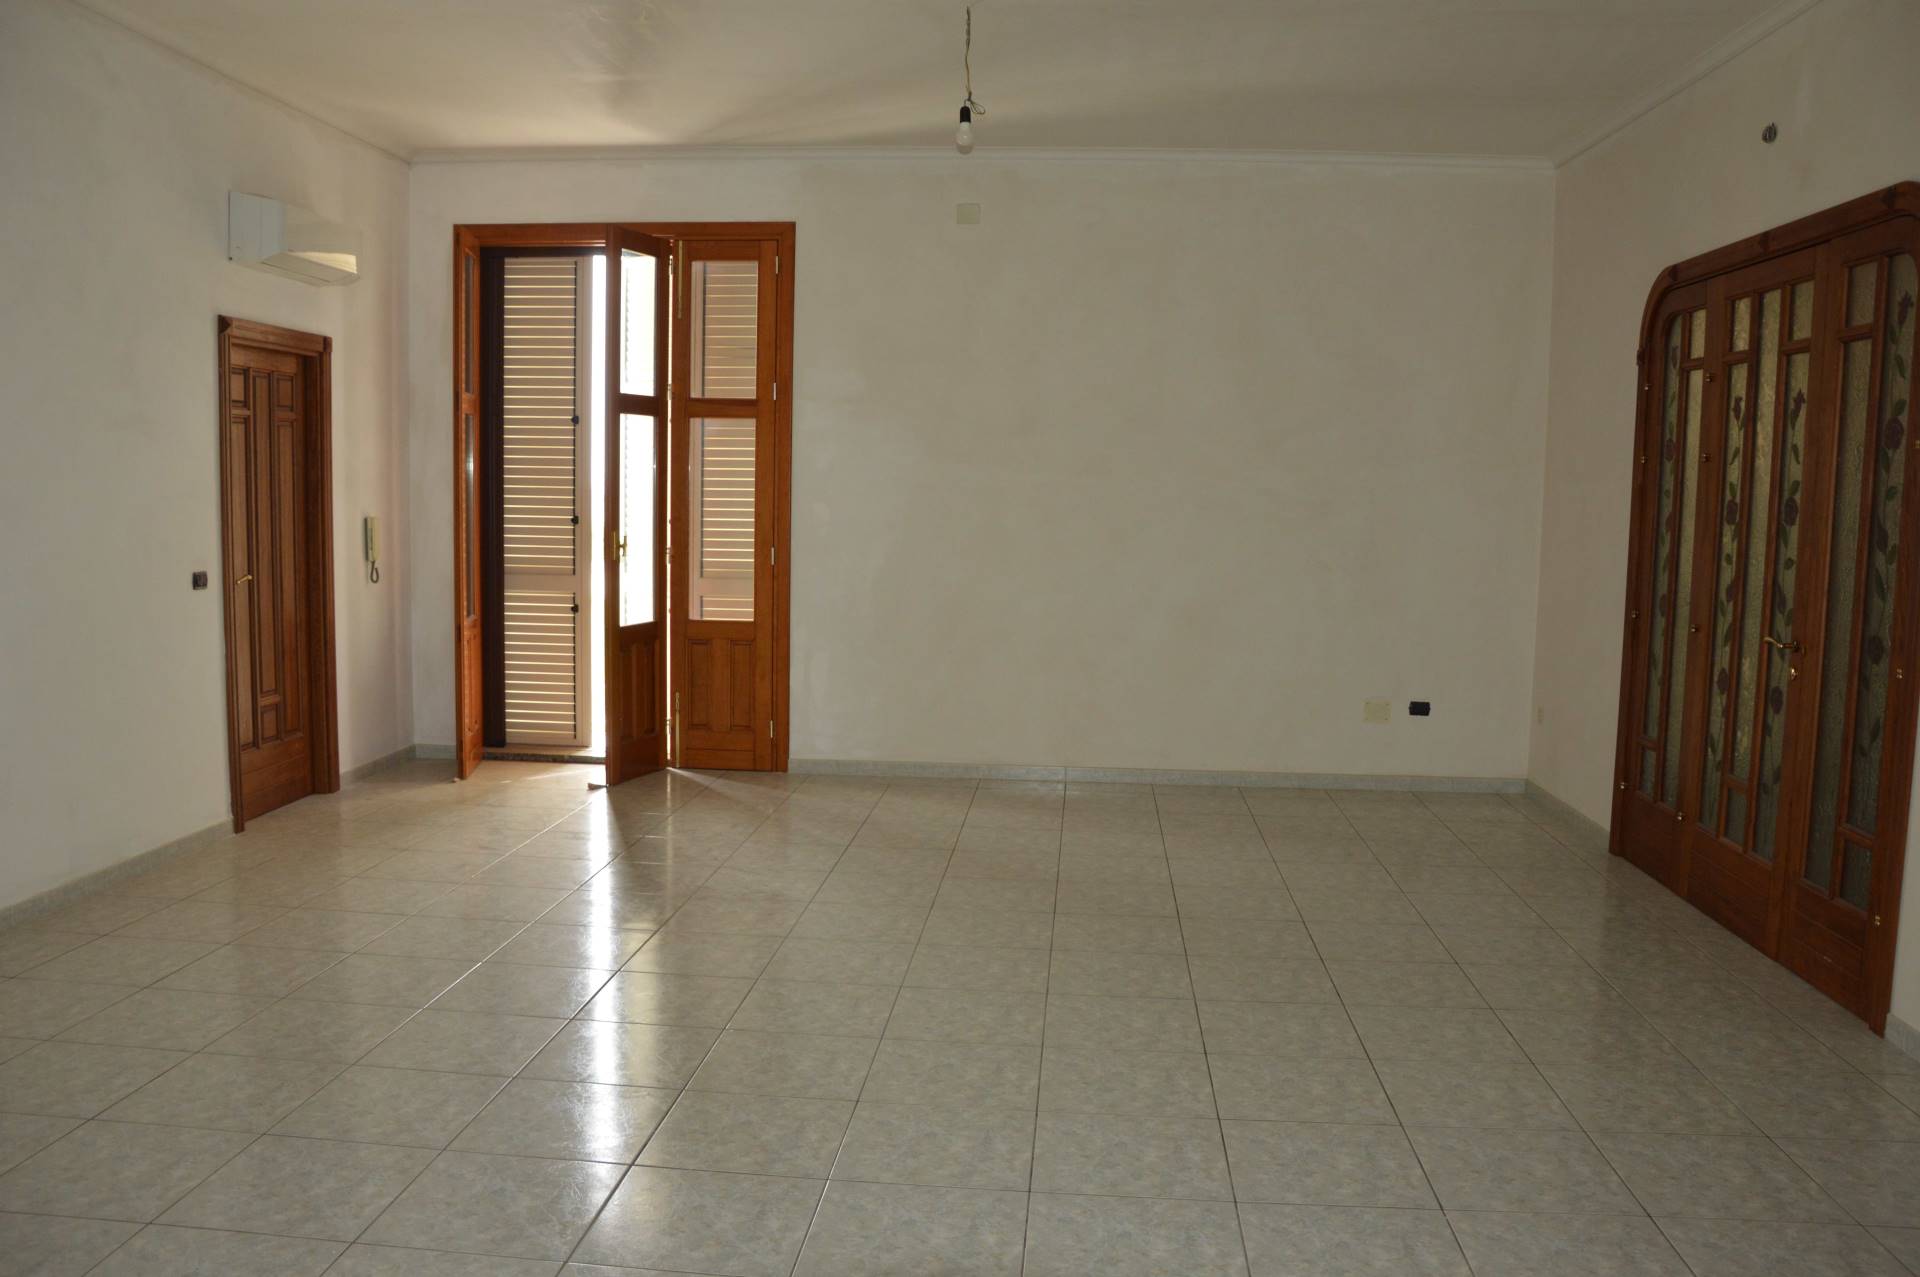 Appartamento in affitto a Avola, 6 locali, prezzo € 600 | CambioCasa.it